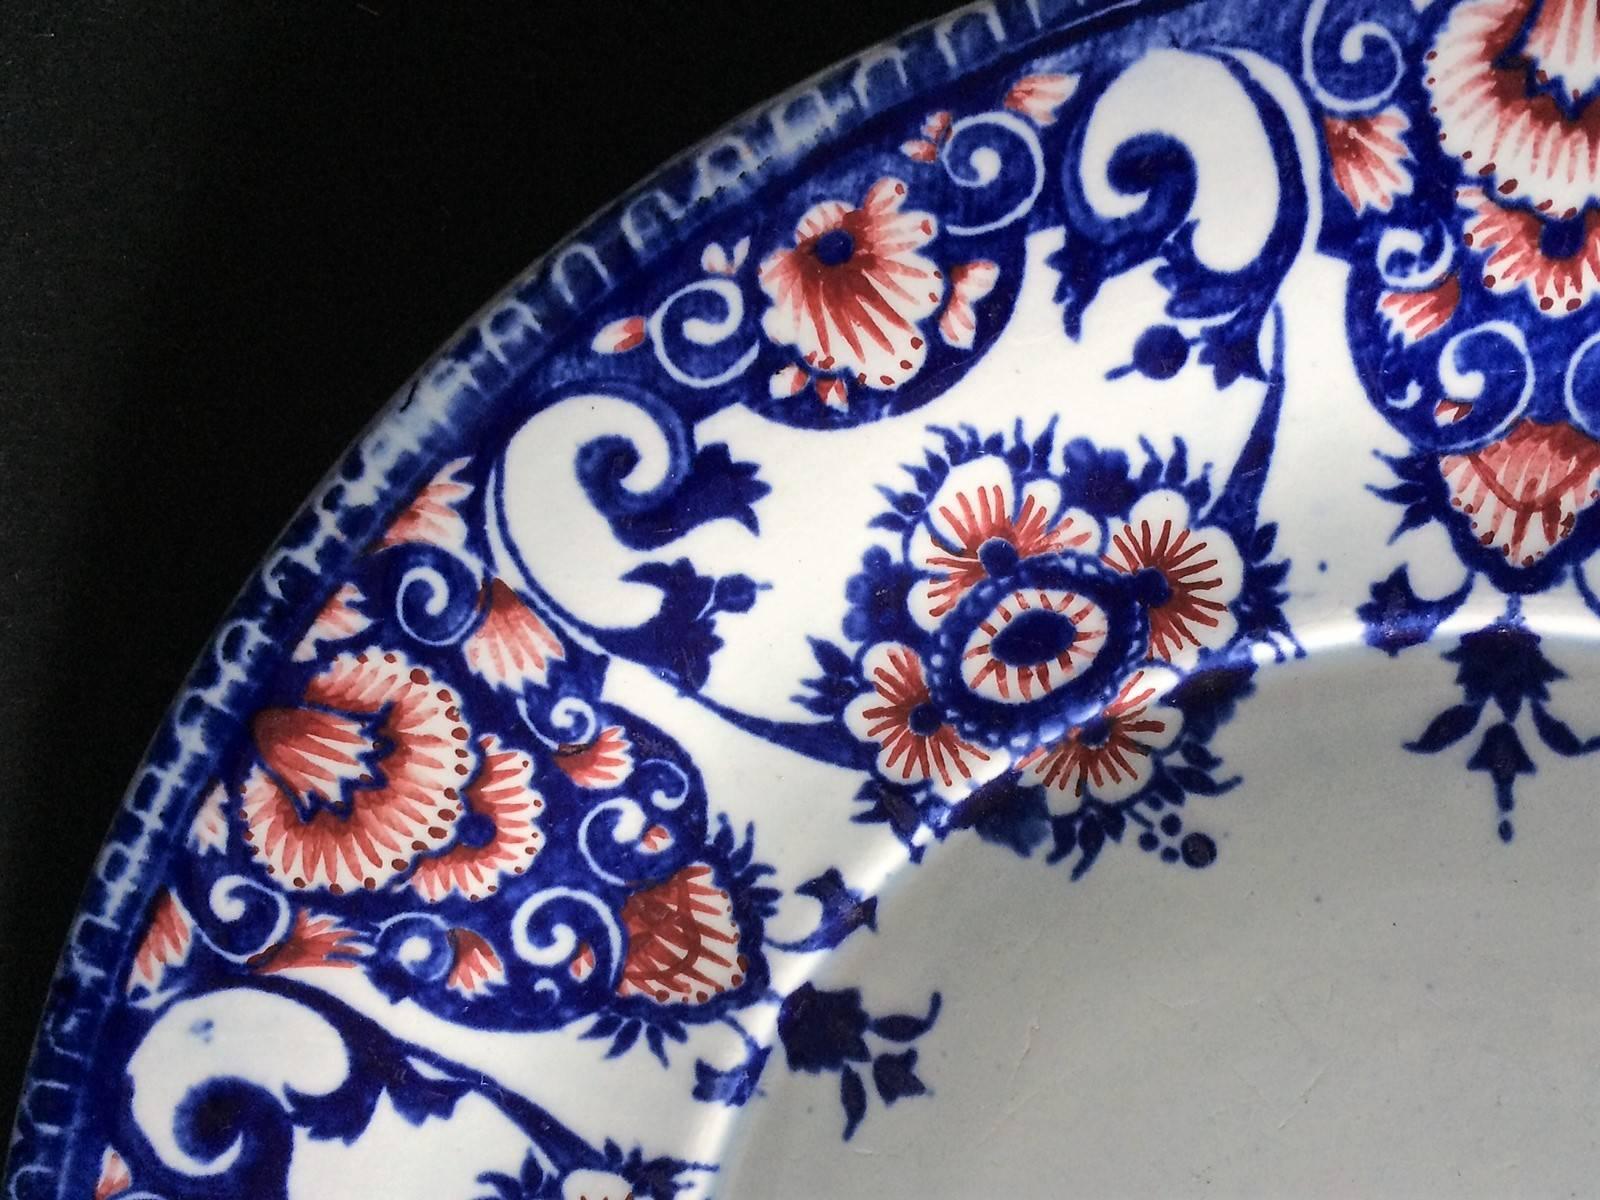 Assiette décorative en faïence de Gien décorée de motifs floraux stylisés bleus et rouges sur fond blanc.
Cachet de la manufacture de Gien au dos de la plaque.